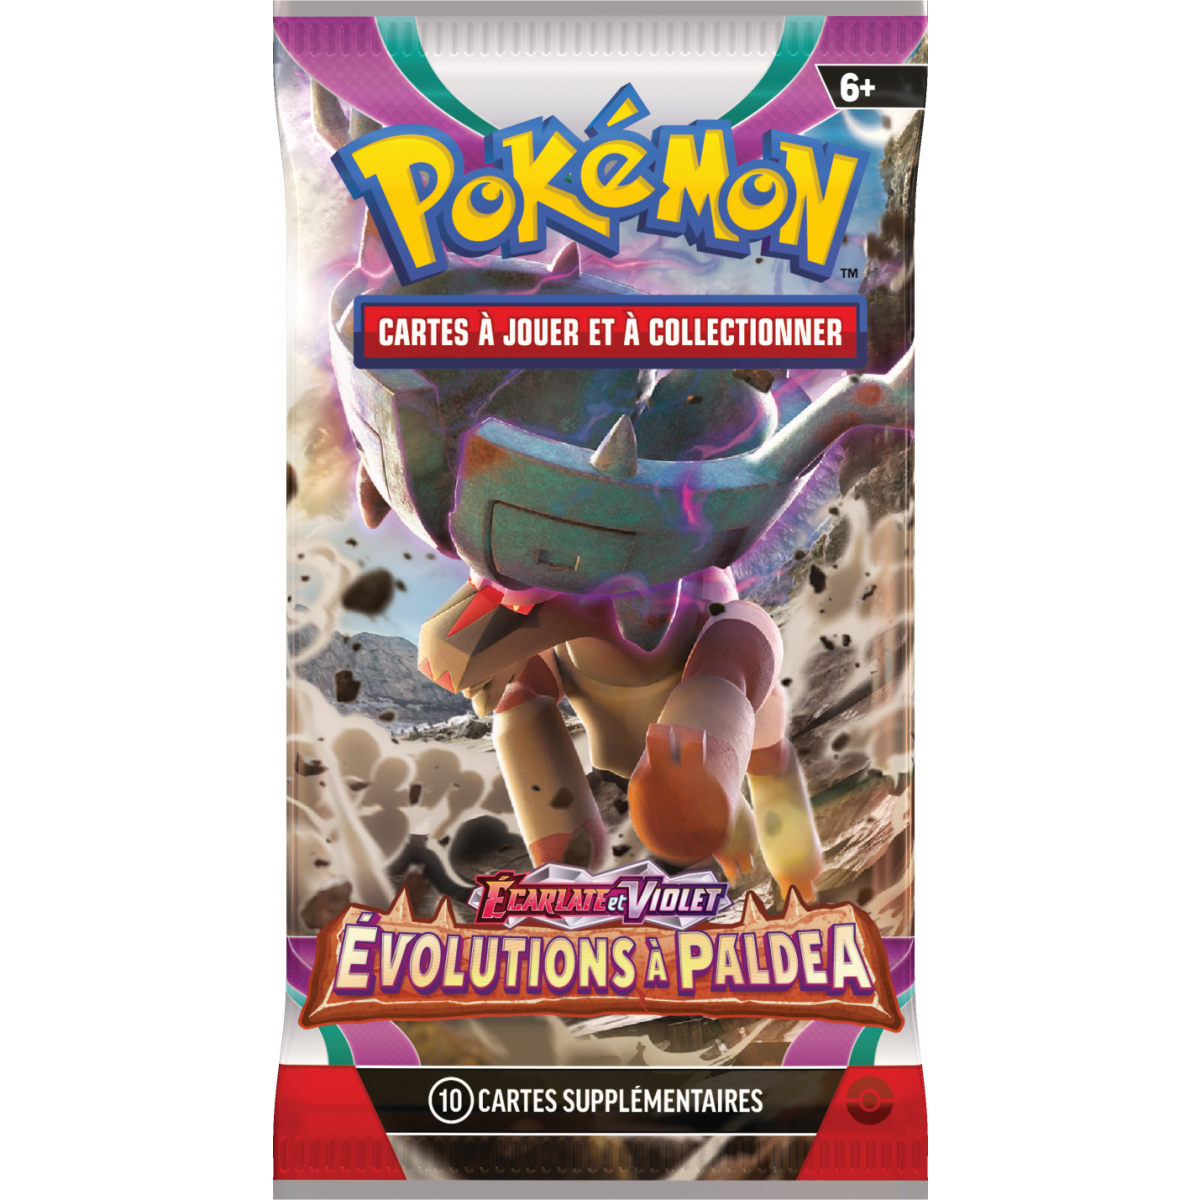 Pokémon - Display Boîte de 36 Boosters Évolution Céleste EB07